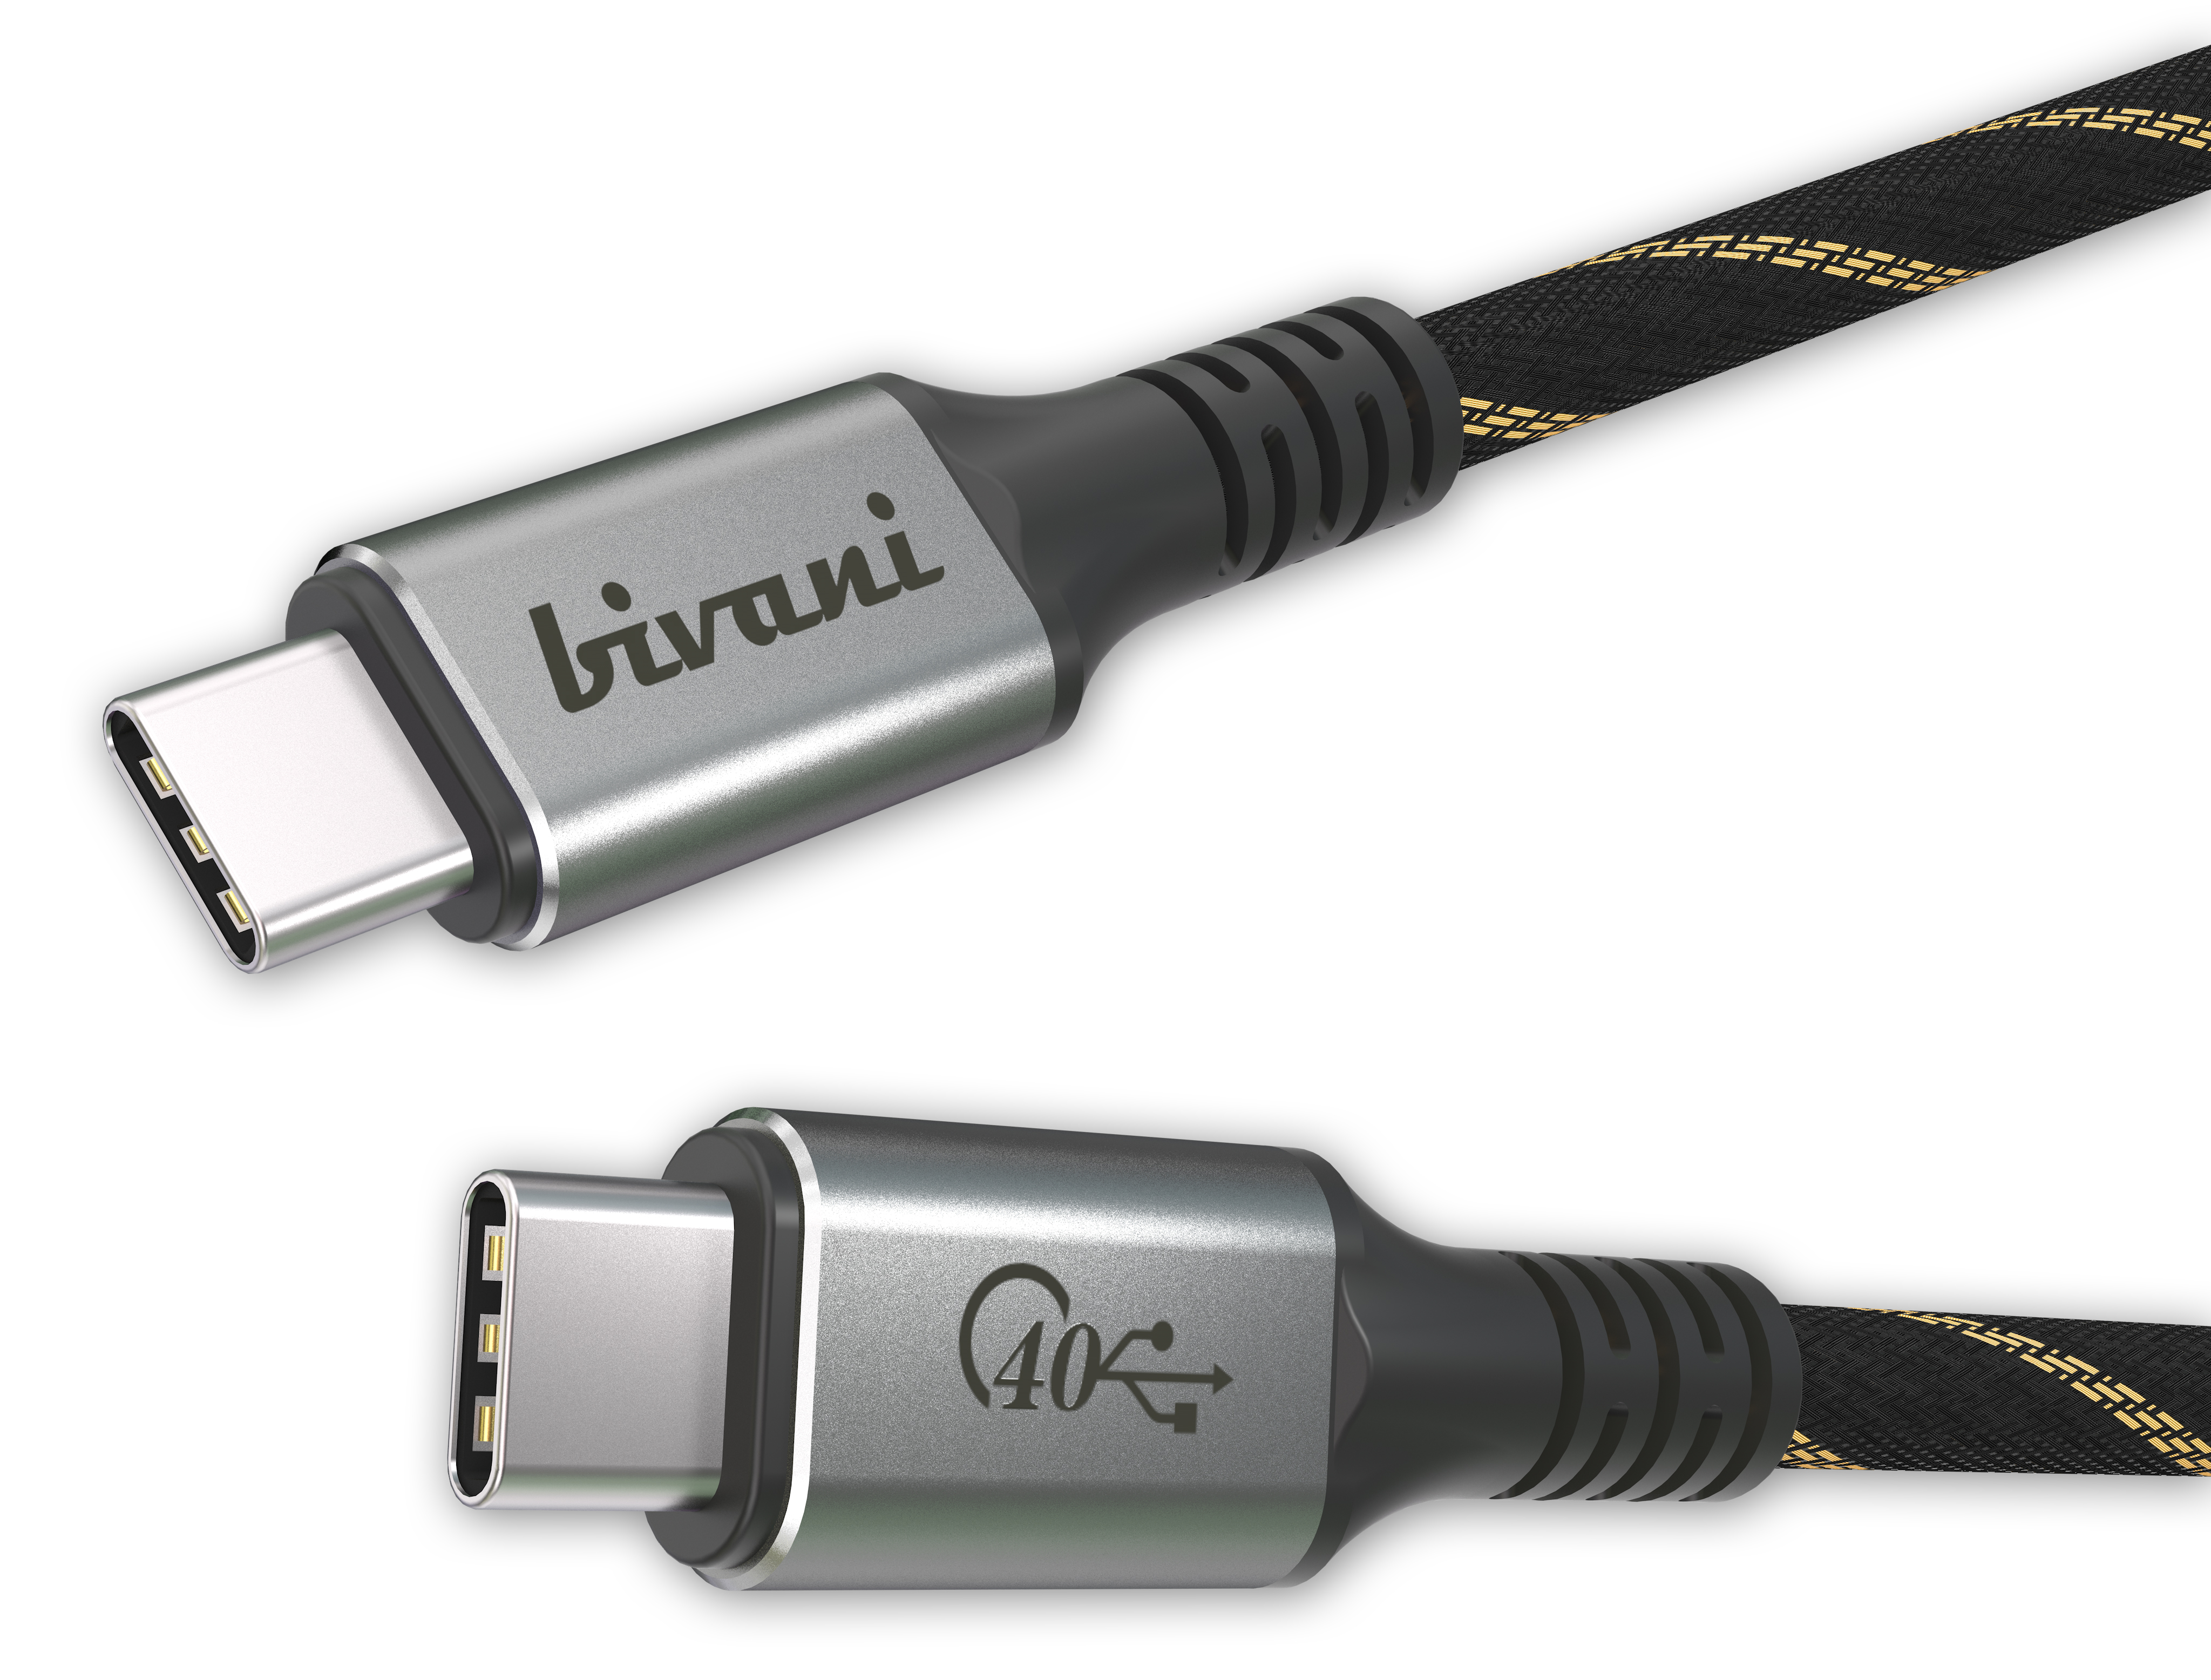 Kabel USB4 Elite Premium Series 40 Gbps USB4 BIVANI Kabel -